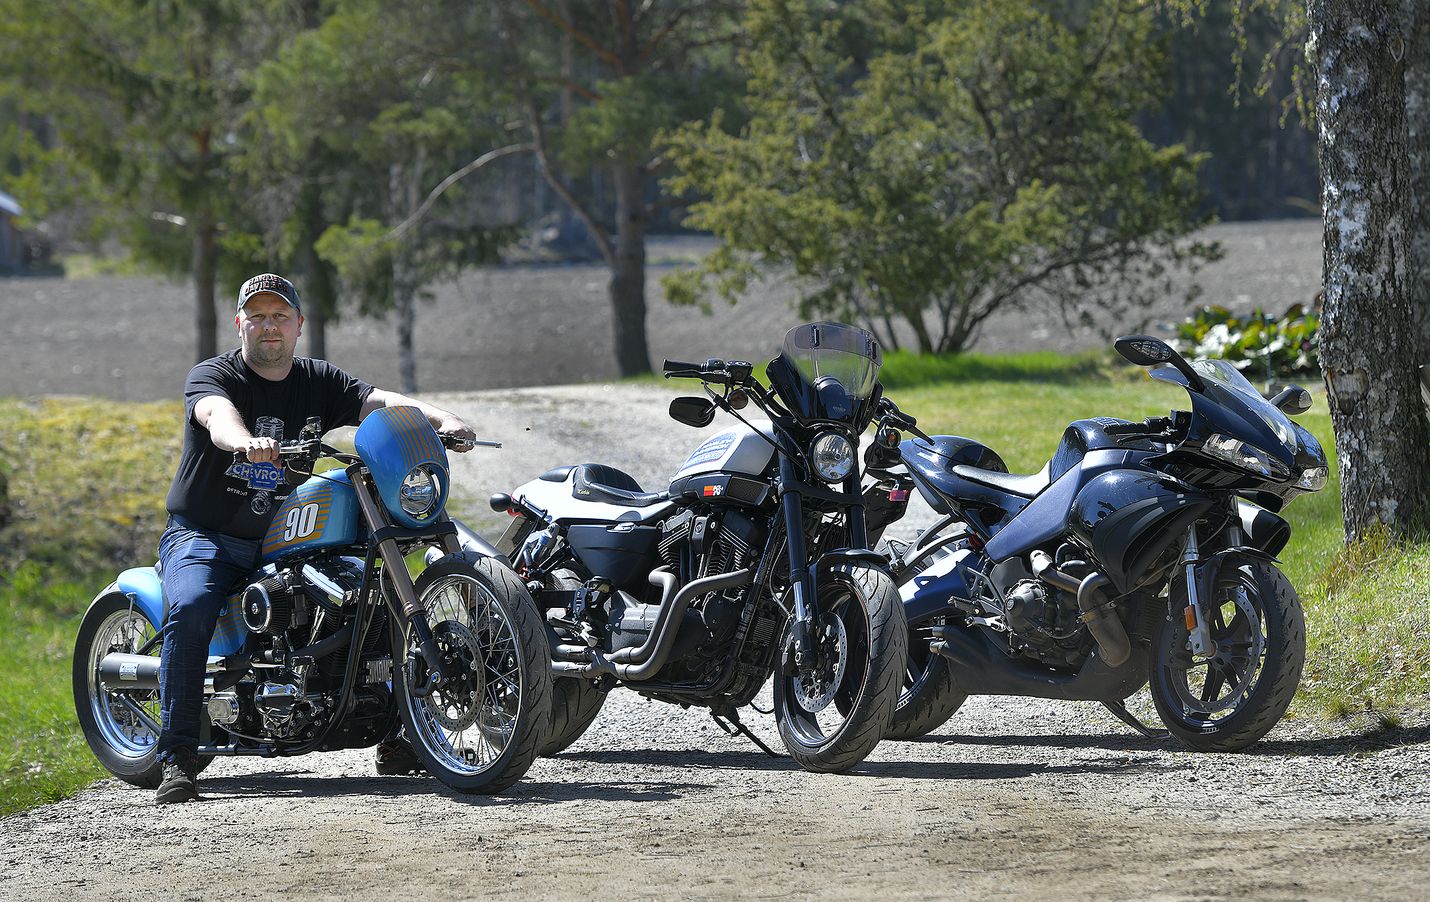 Kuvaushetkellä Vähä-Ettalan perheessä oli kolme moottoripyörää. Niklas istuu myynnisä olevan  Harley-Davidson Softailin selässä, keskellä on Harley-Davidson XR 1200 X ja oikealla Buell 1125 R.